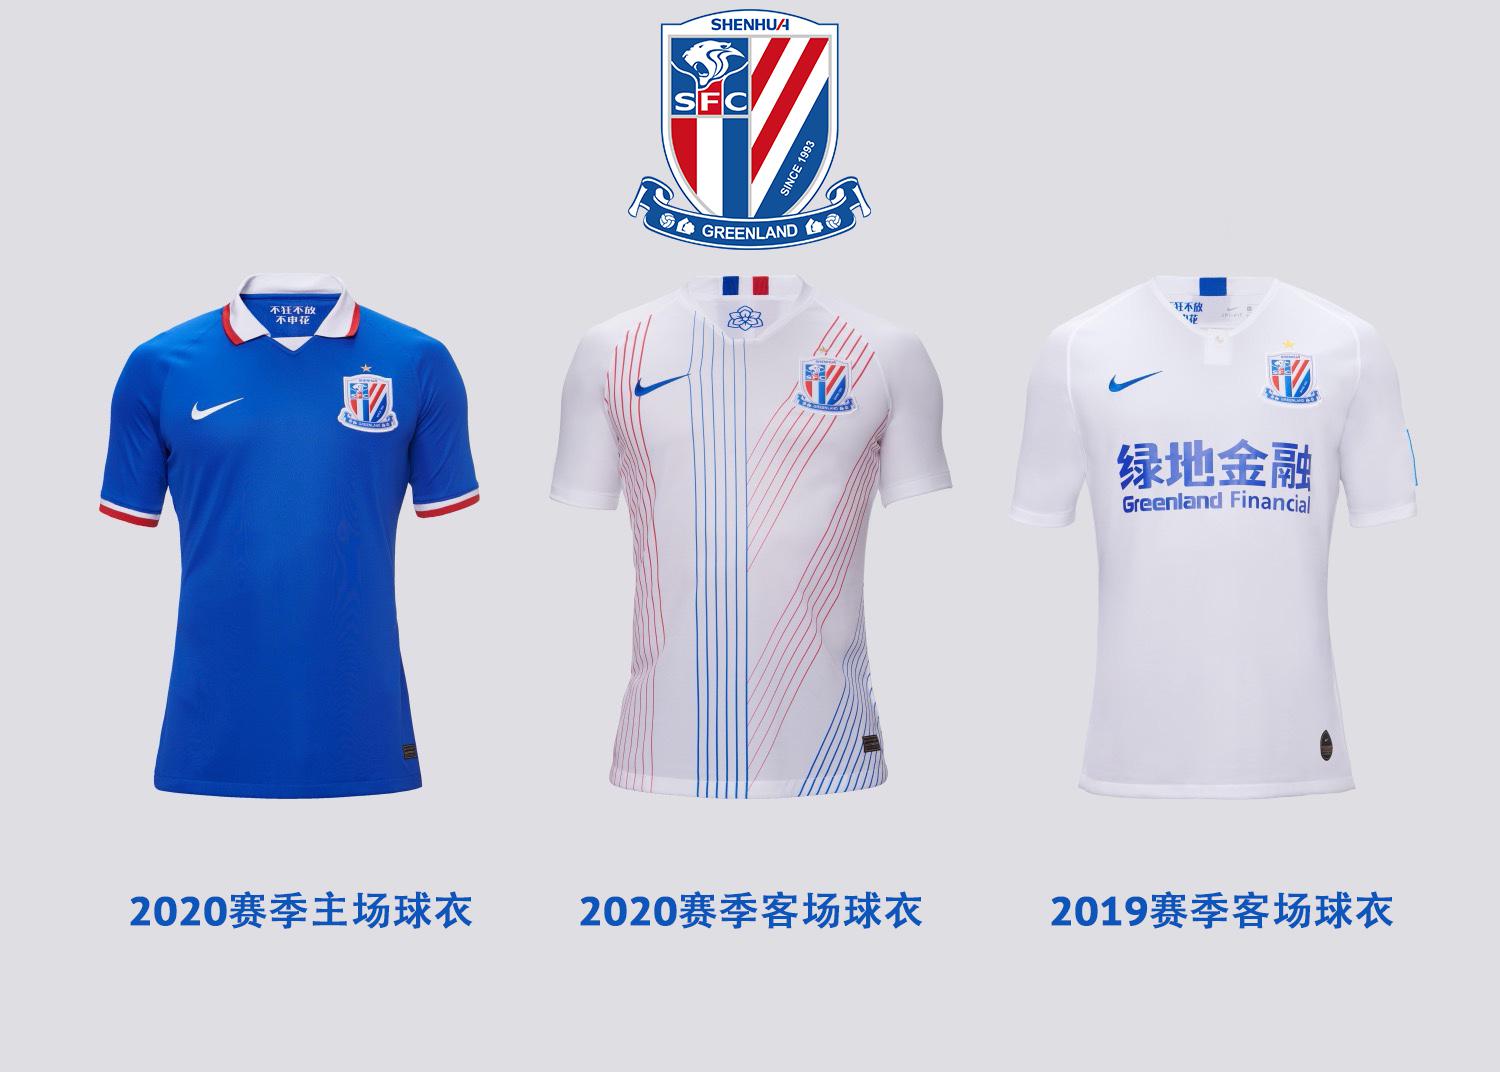 中超足球队耐克翻领短袖 耐克发布中超2020赛季球衣(14)